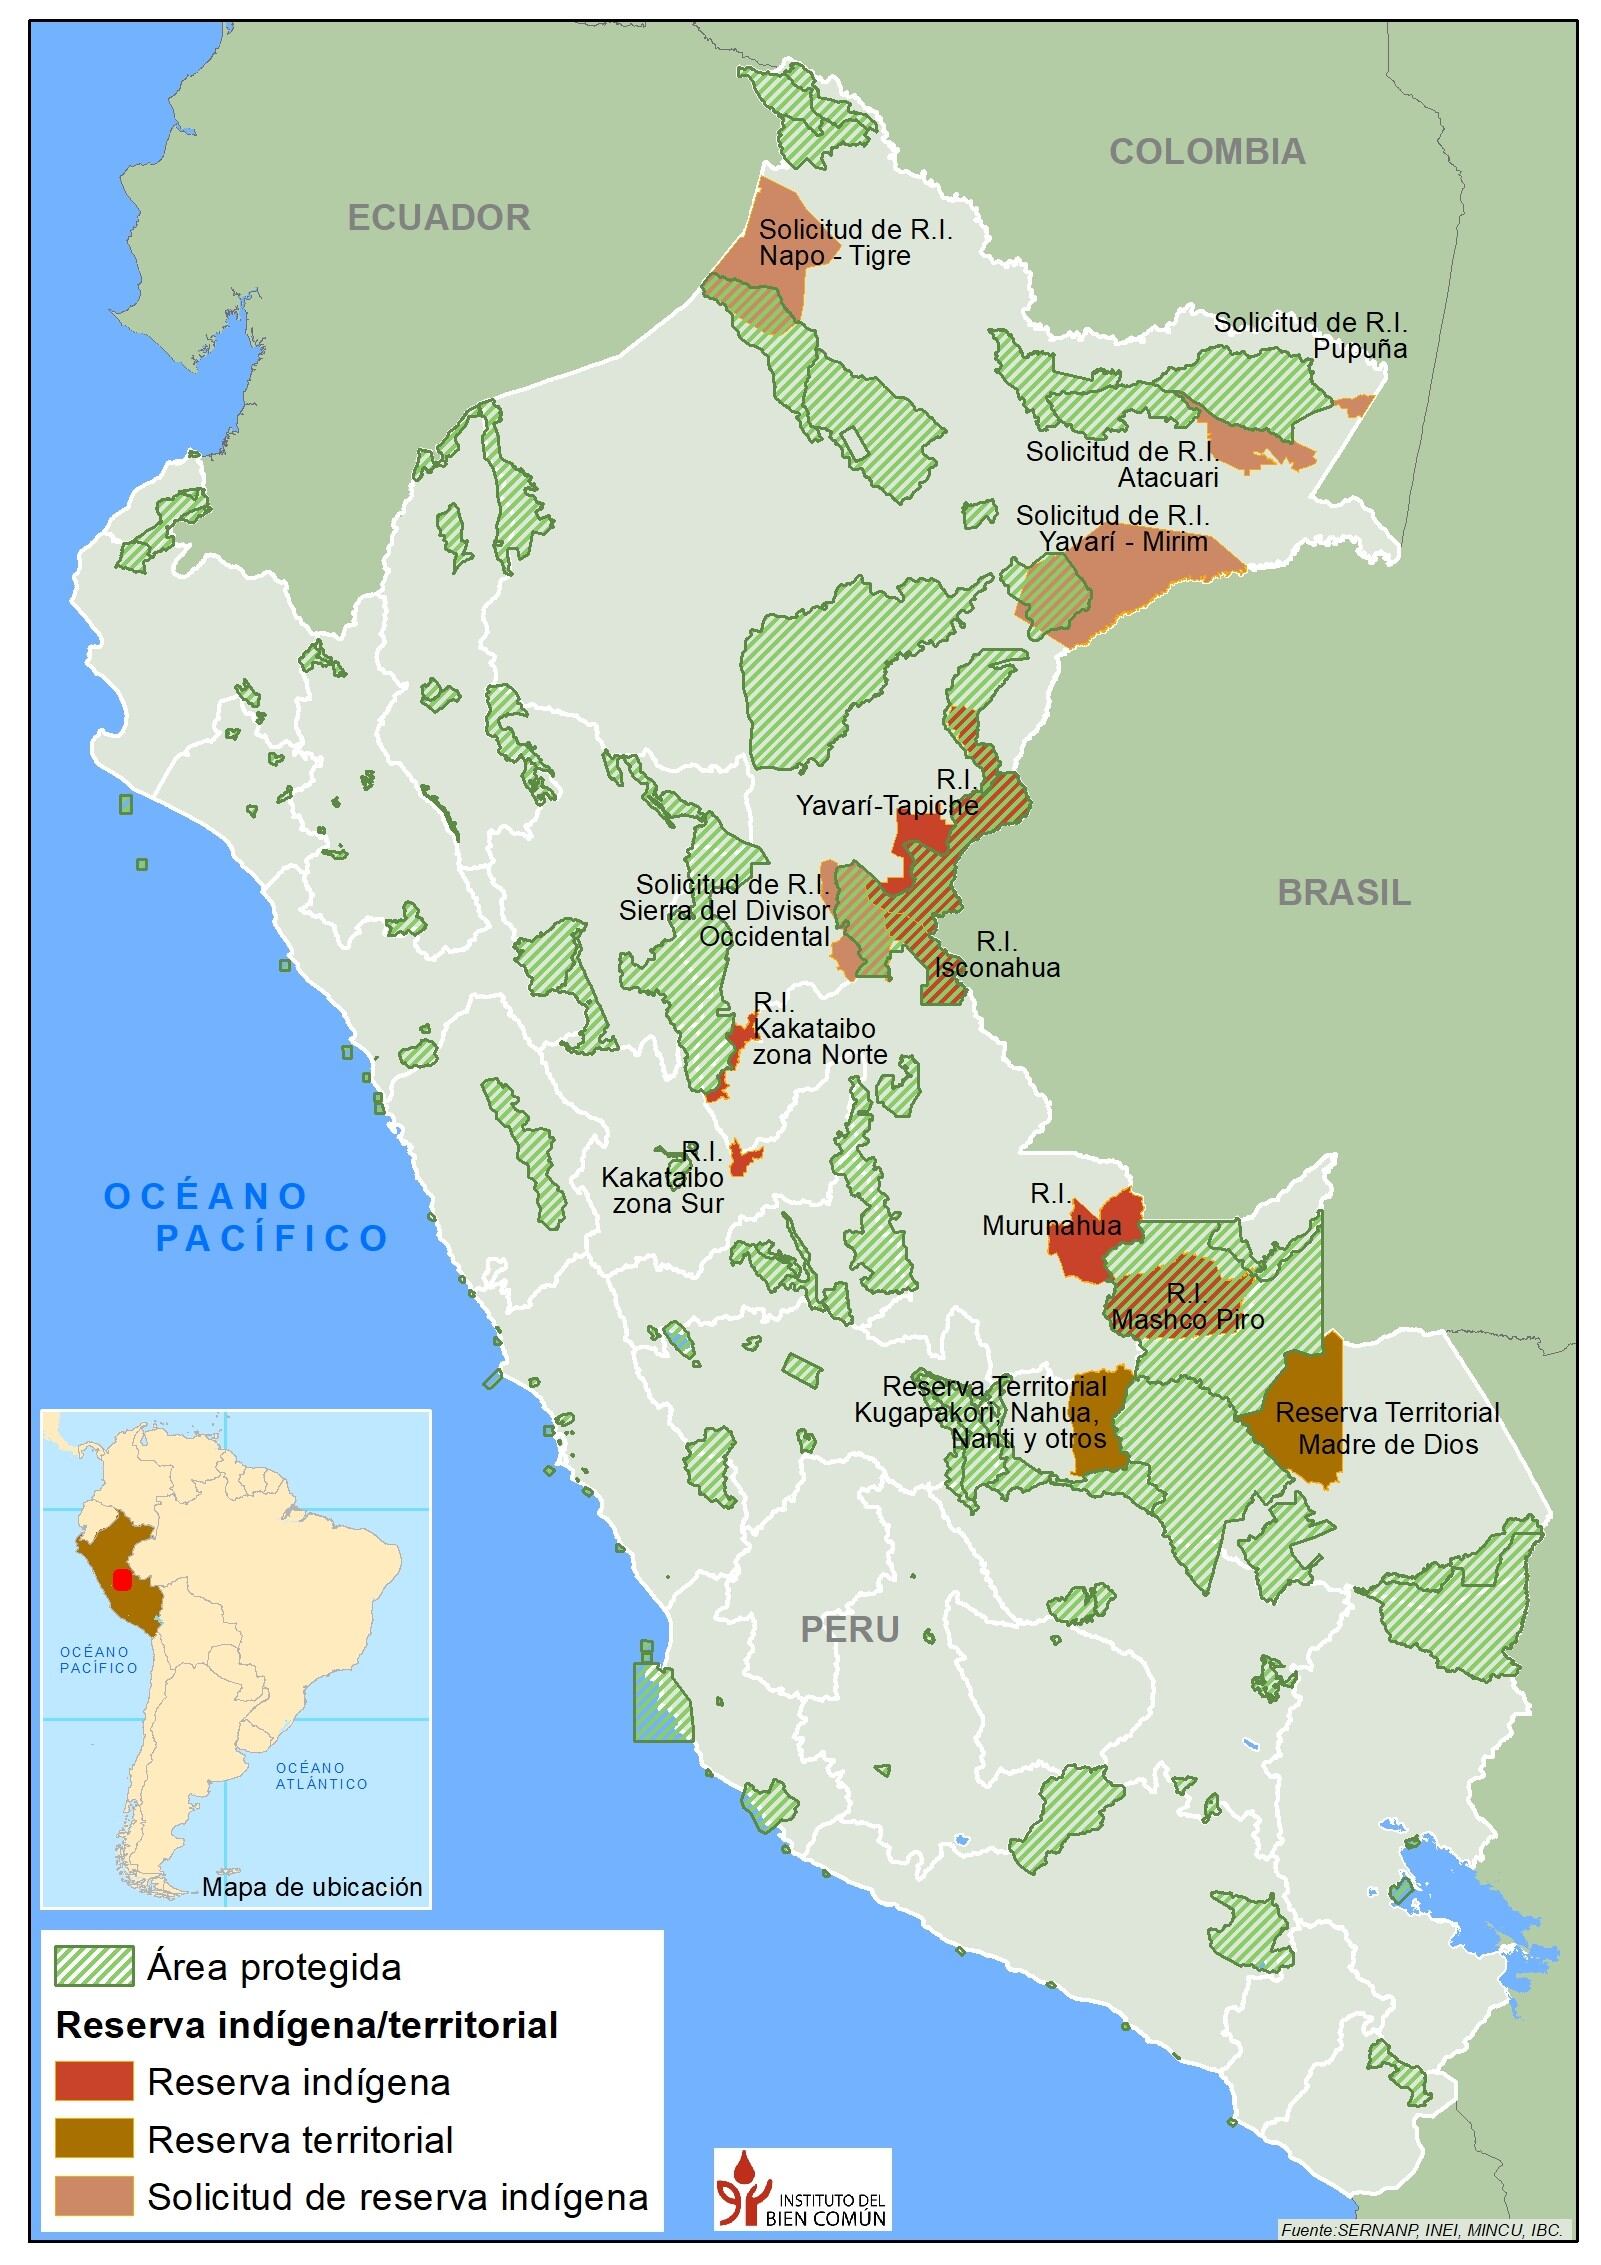 Reservas para protección de pueblos en aislamiento y áreas naturales protegidas con presencia de estos grupos, en Perú.